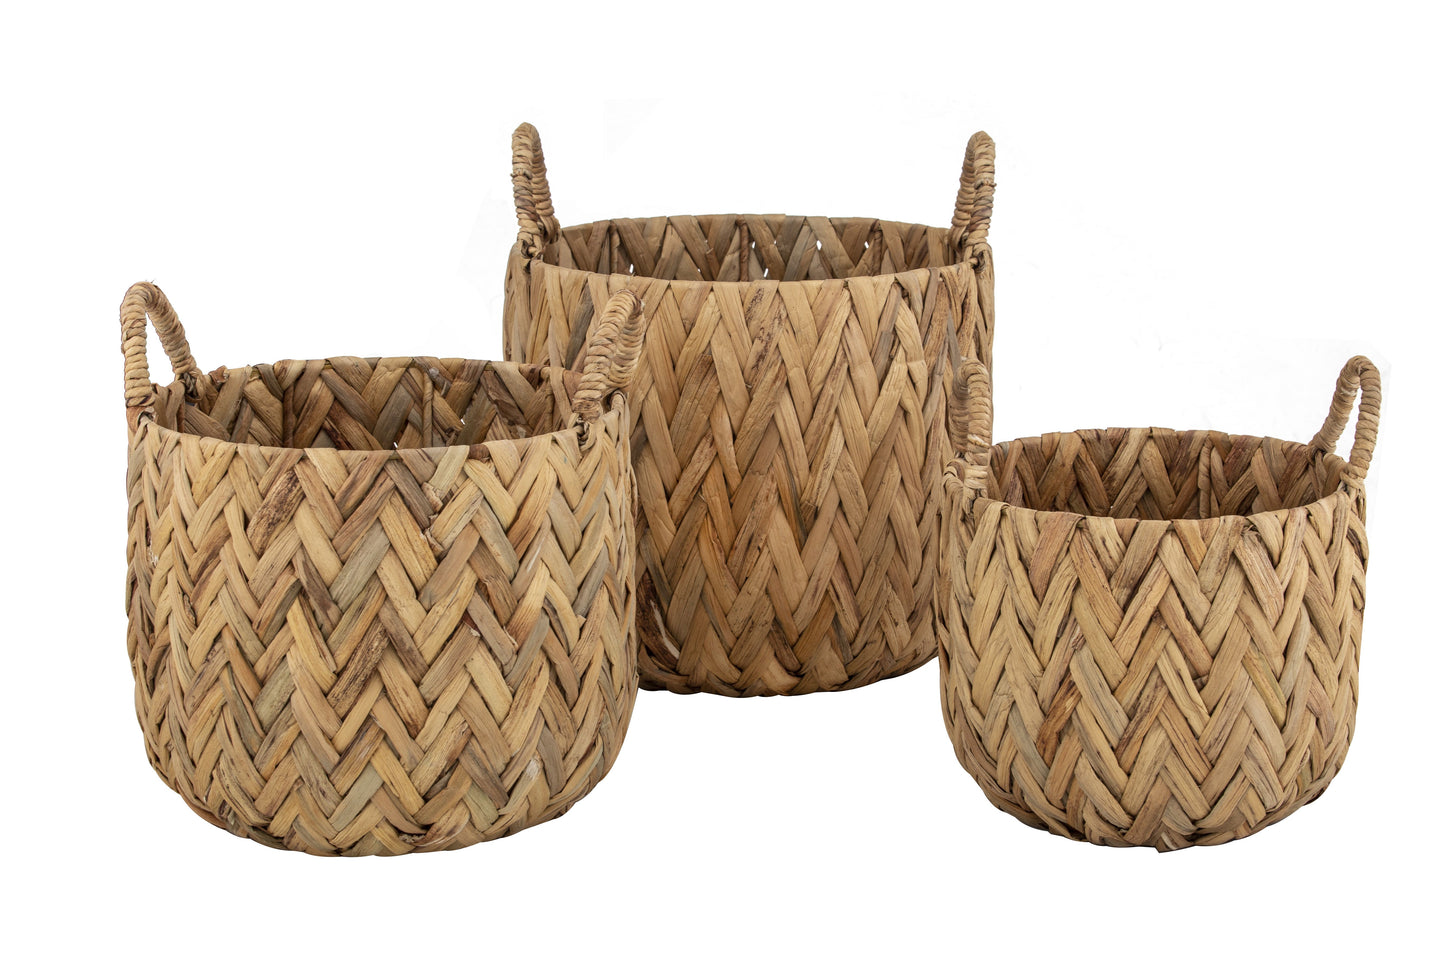 Andaz Baskets - 3 sizes